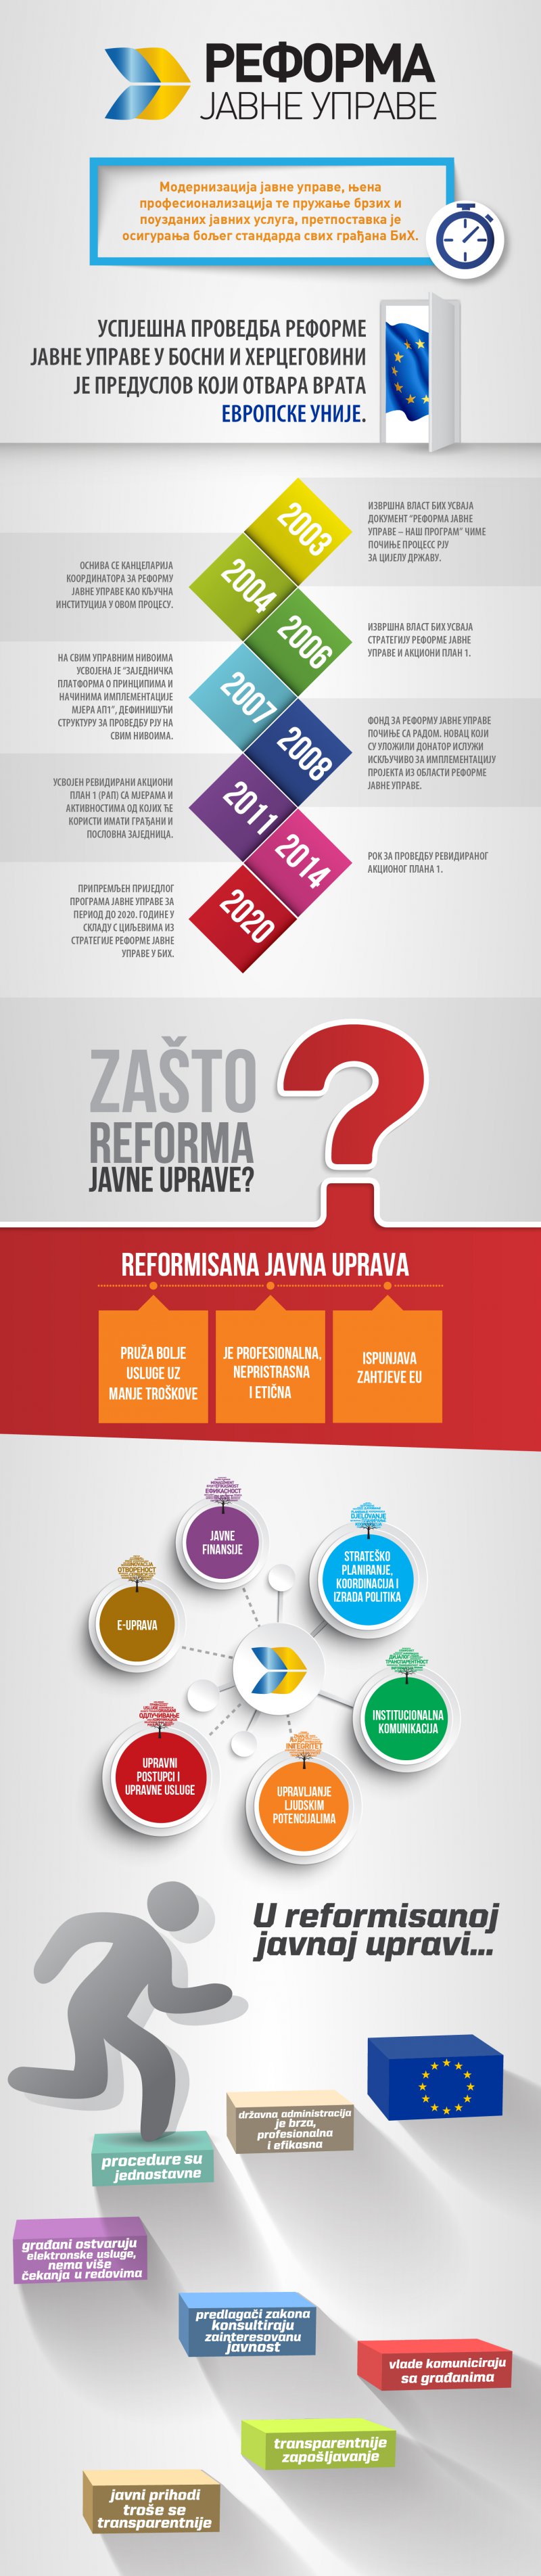 reforma-javna-uprava-1